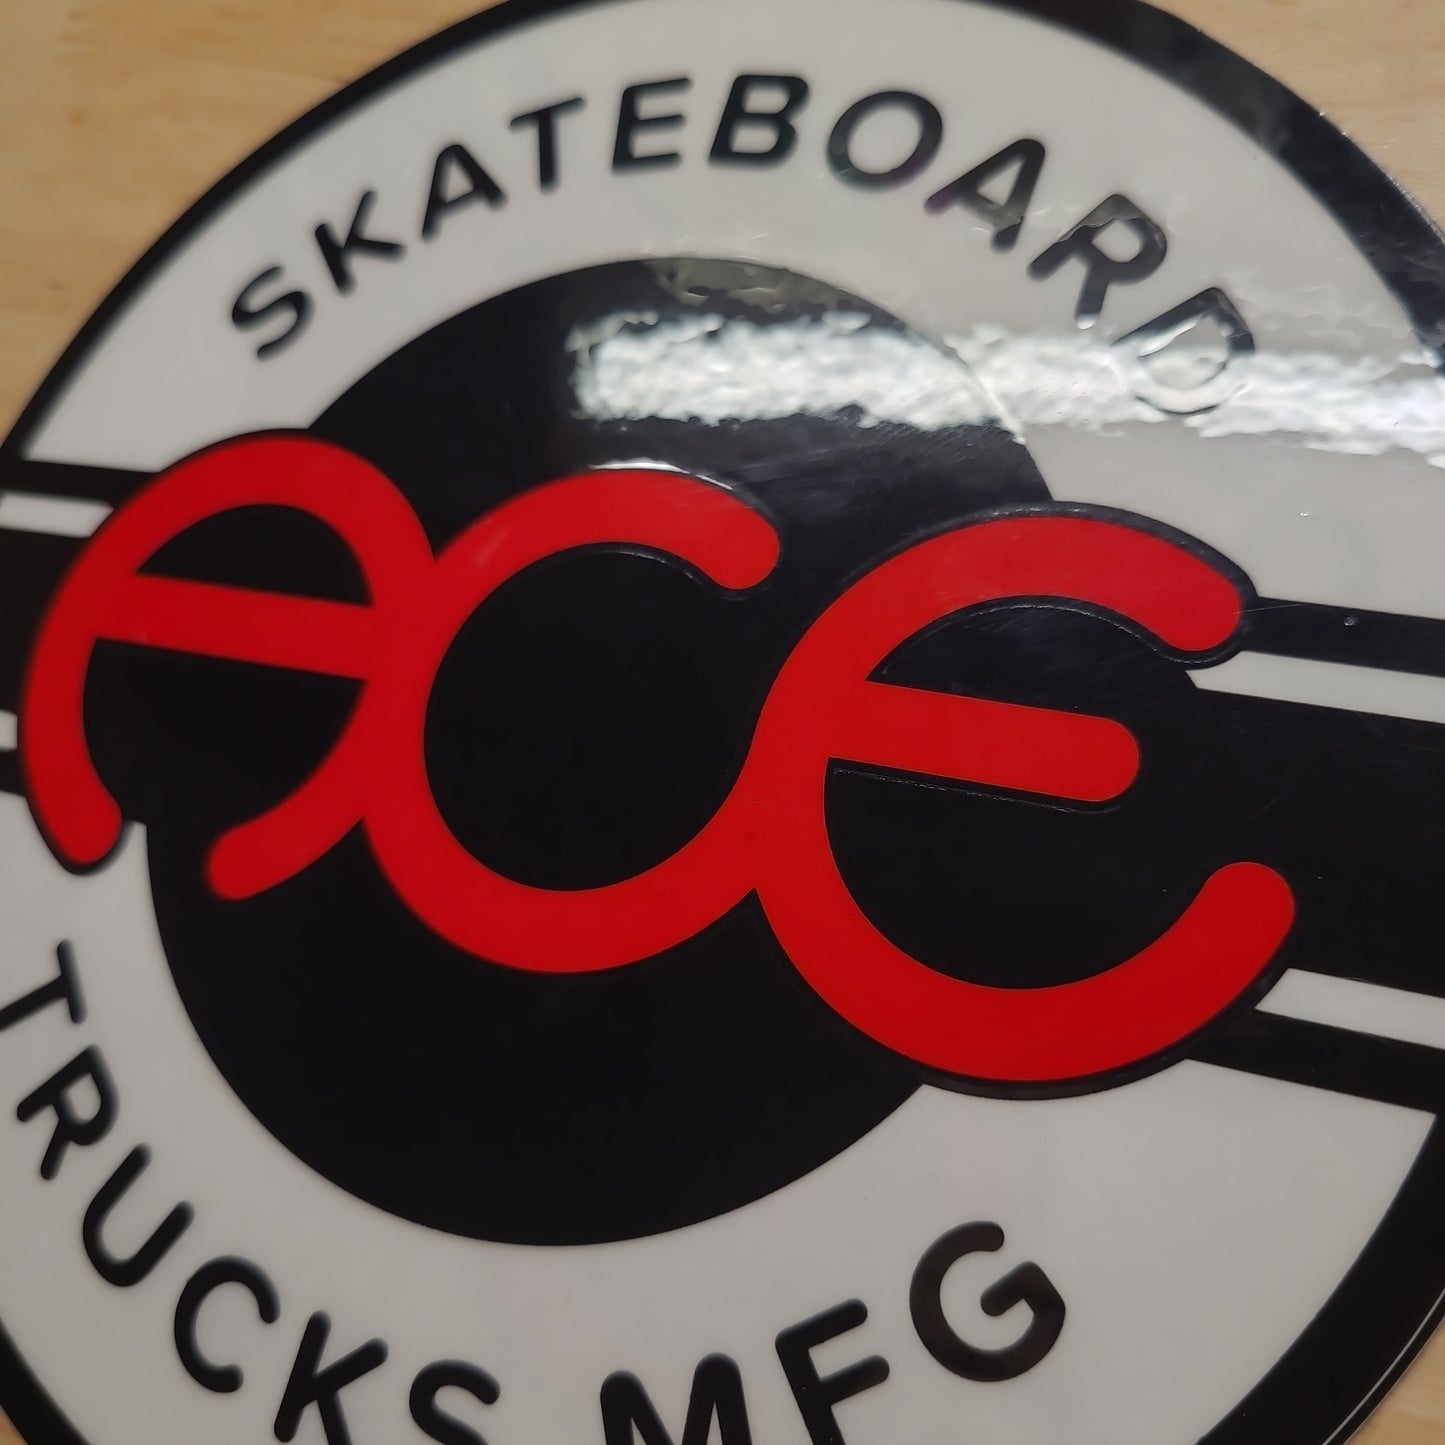 Ace Trucks - Big Seal Sticker (6")